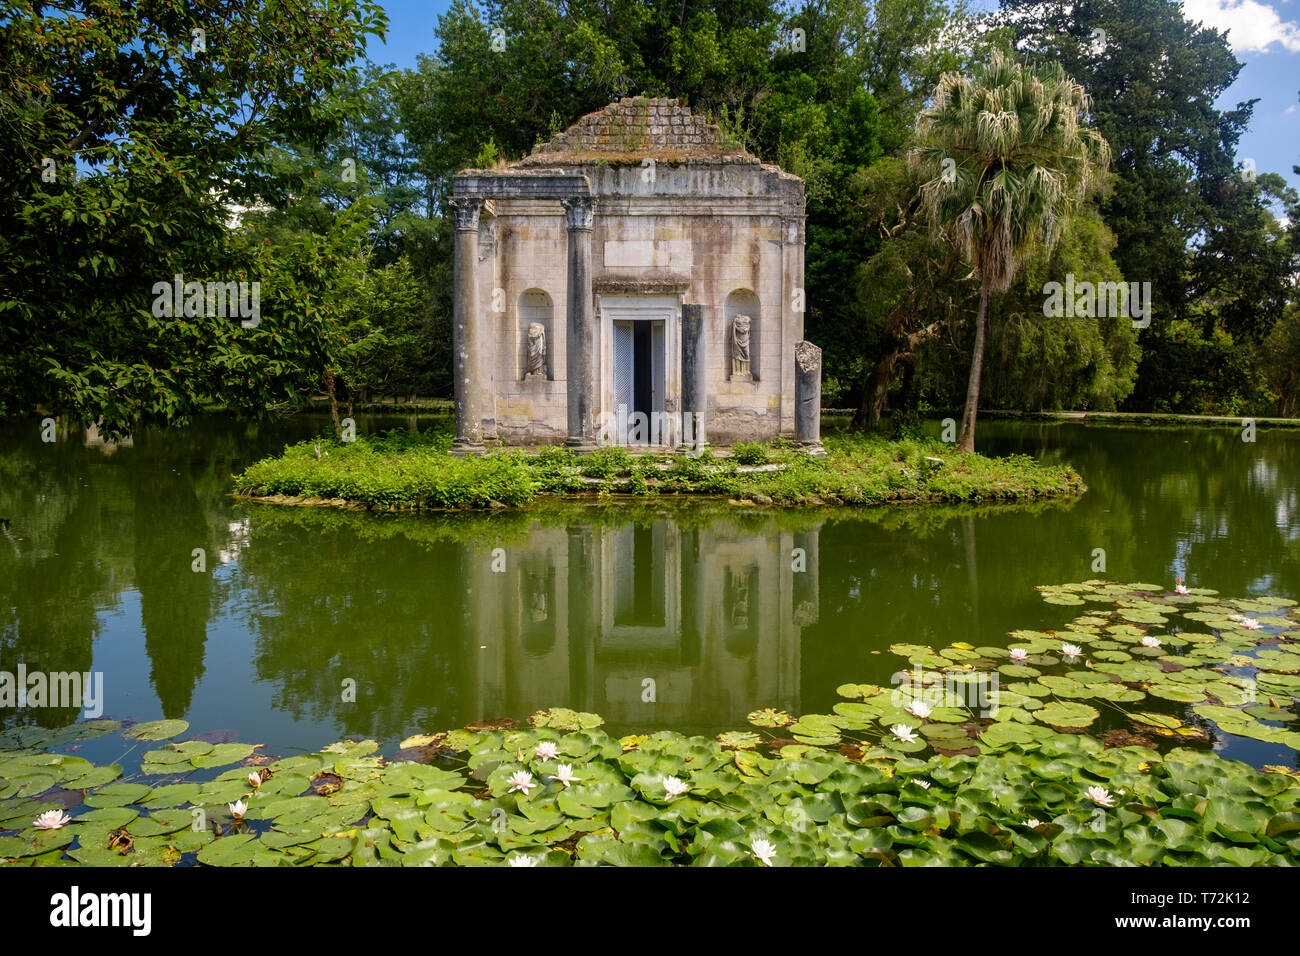 Der englische Garten des "Reggia di Caserta' hat ein paar gefälschte Ruinen, wie dieser Tempel auf einer kleinen Insel in der Mitte eines Teiches mit Lilien ruinieren. Stockfoto